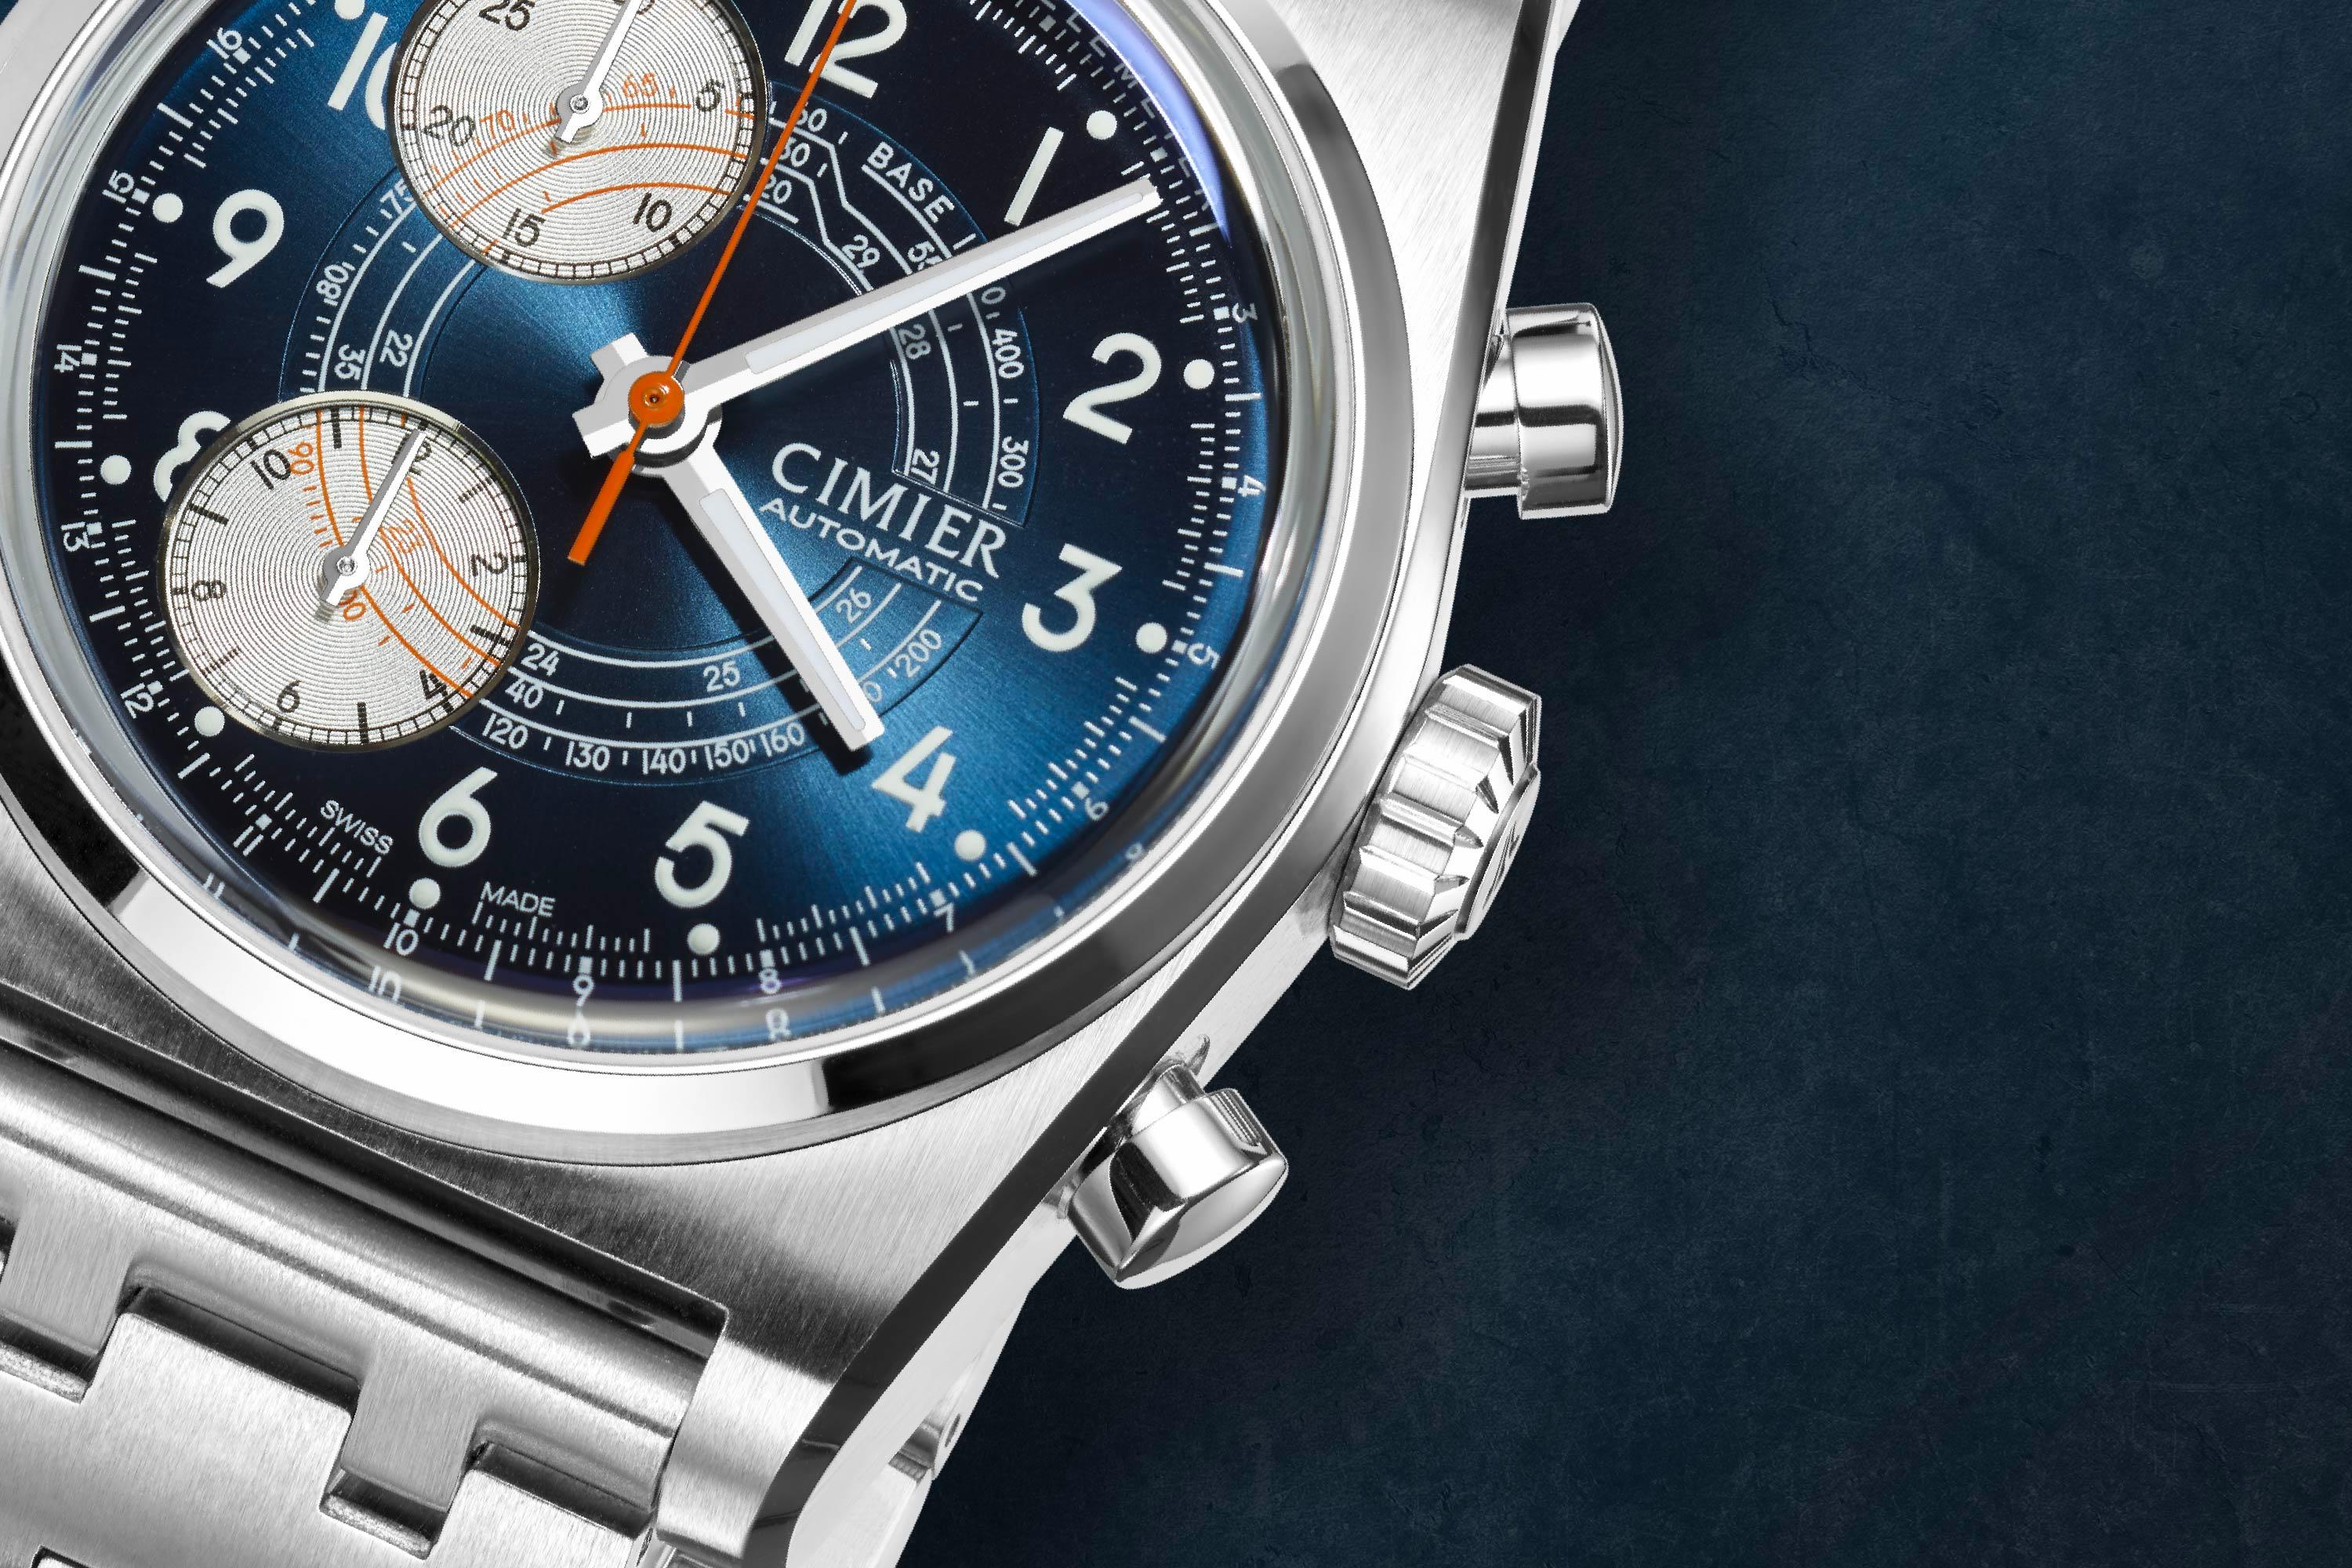 Case of Cimier wristwatch blue dial